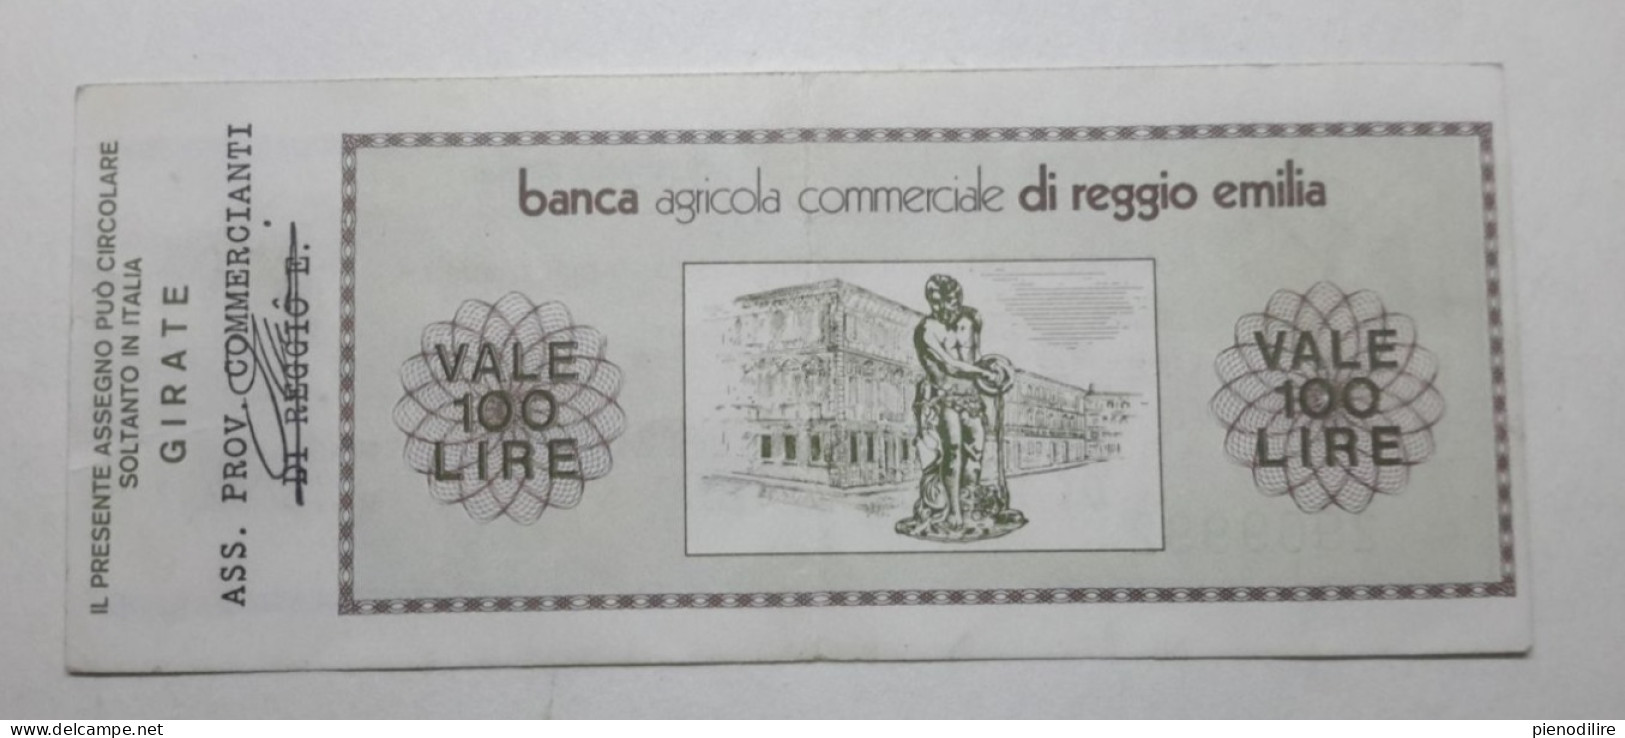 BANCA AGRICOLA COMMERCIALE DI REGGIO EMILIA, 100 Lire 01.06.1976 Ass. Prov. Commercianti (A1.42) - [10] Checks And Mini-checks